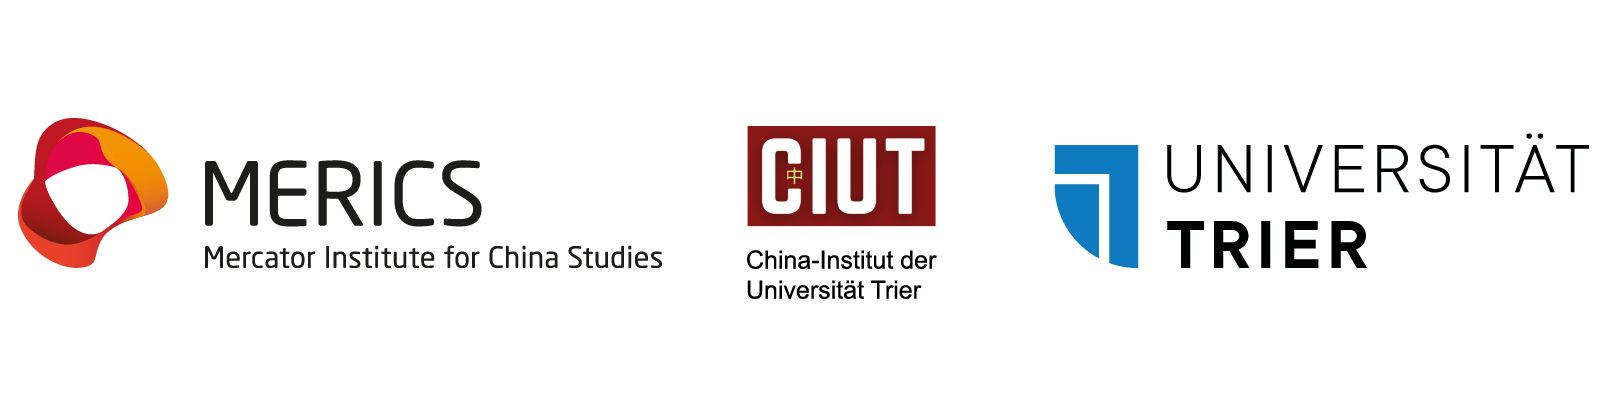 Logos MERICS, CIUT, Universität Trier